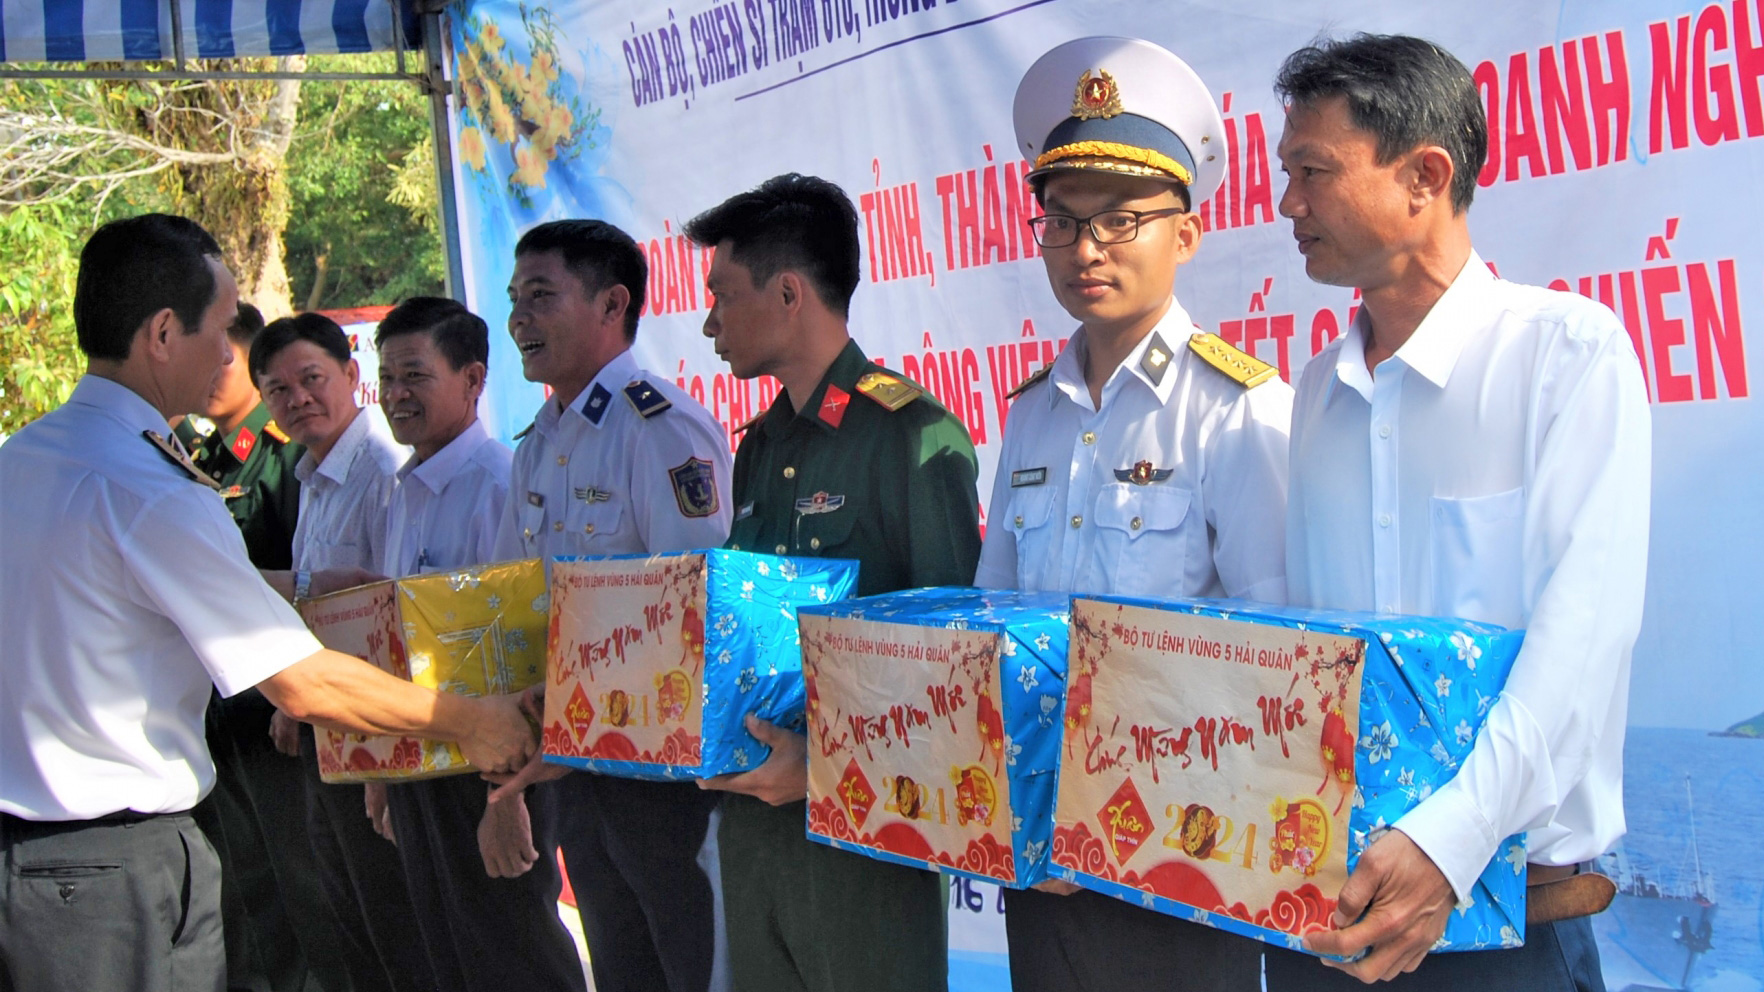 Đoàn Công tác Bộ Tư lệnh Vùng 5 Hải quân thăm chúc Tết cán bộ, chiến sĩ, Nhân dân đảo Thổ Chu